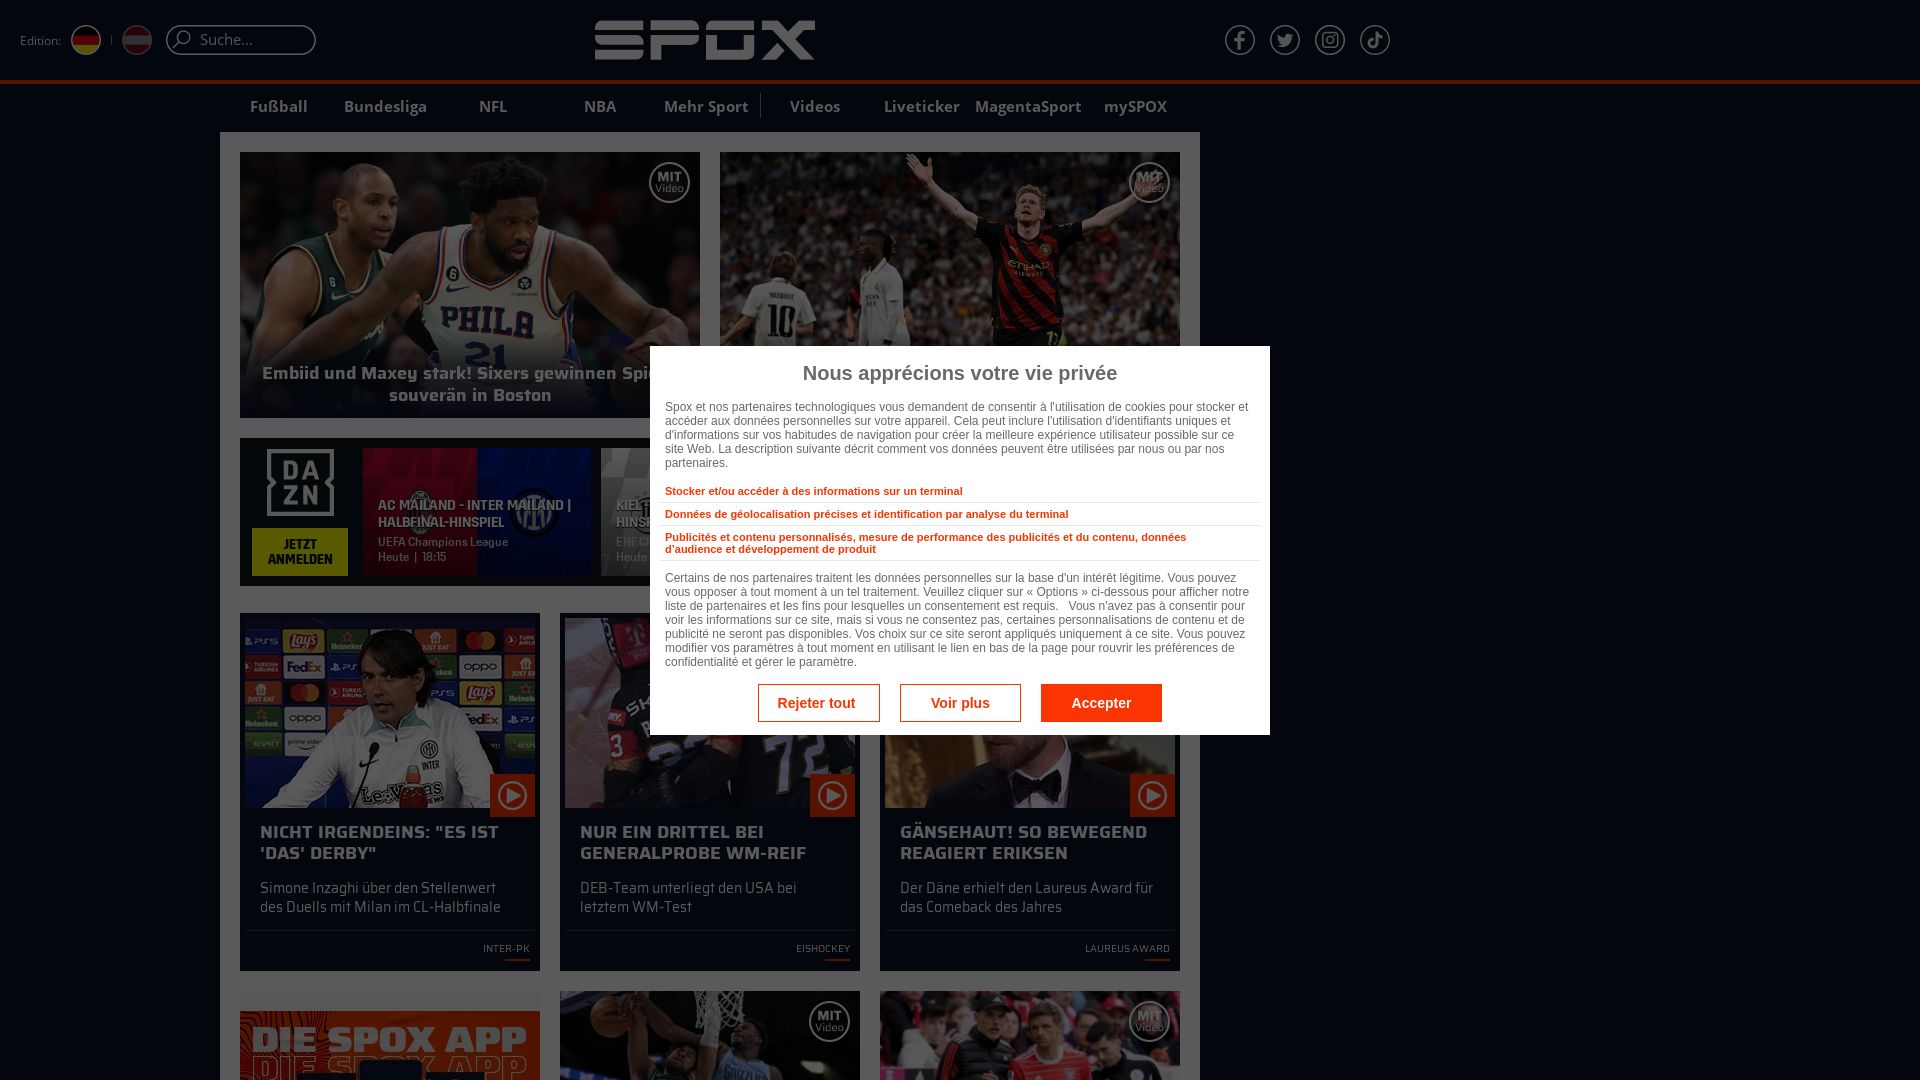 вебсайт spox.com Є   ONLINE